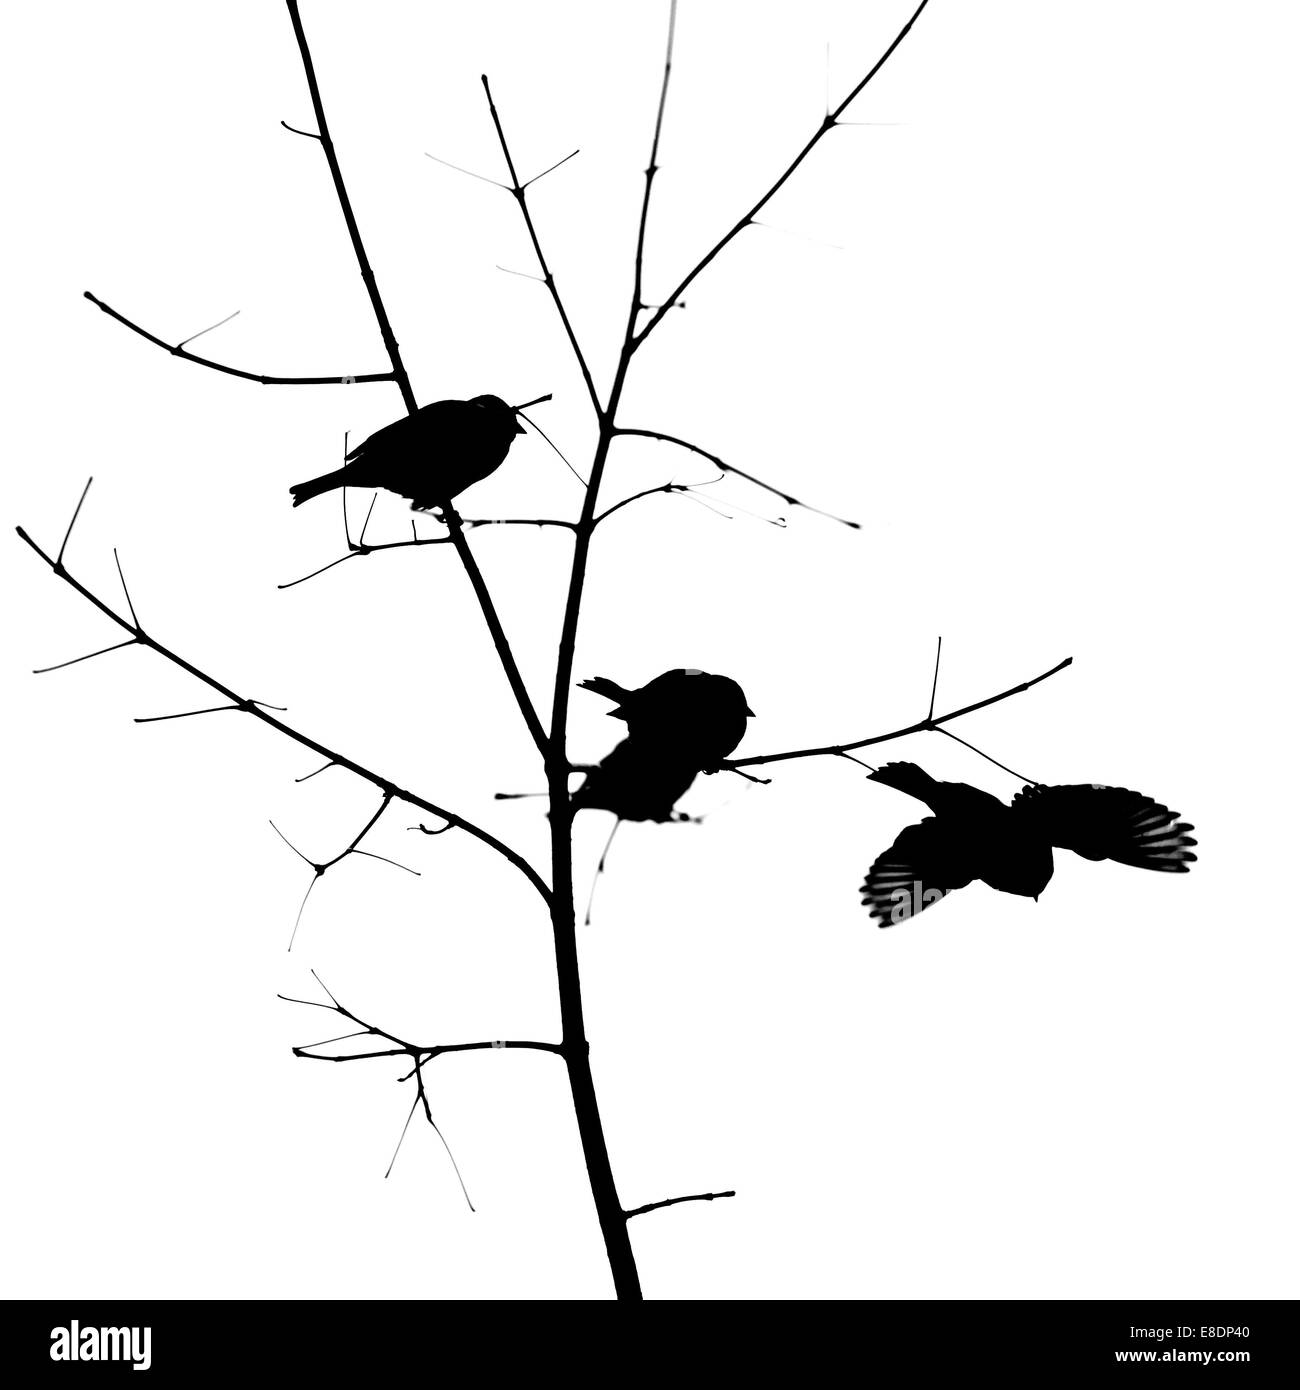 Les oiseaux. Photo minimaliste en noir et blanc de trois moineaux sur un petit arbre. Le forth est s'envoler. Fond blanc Banque D'Images